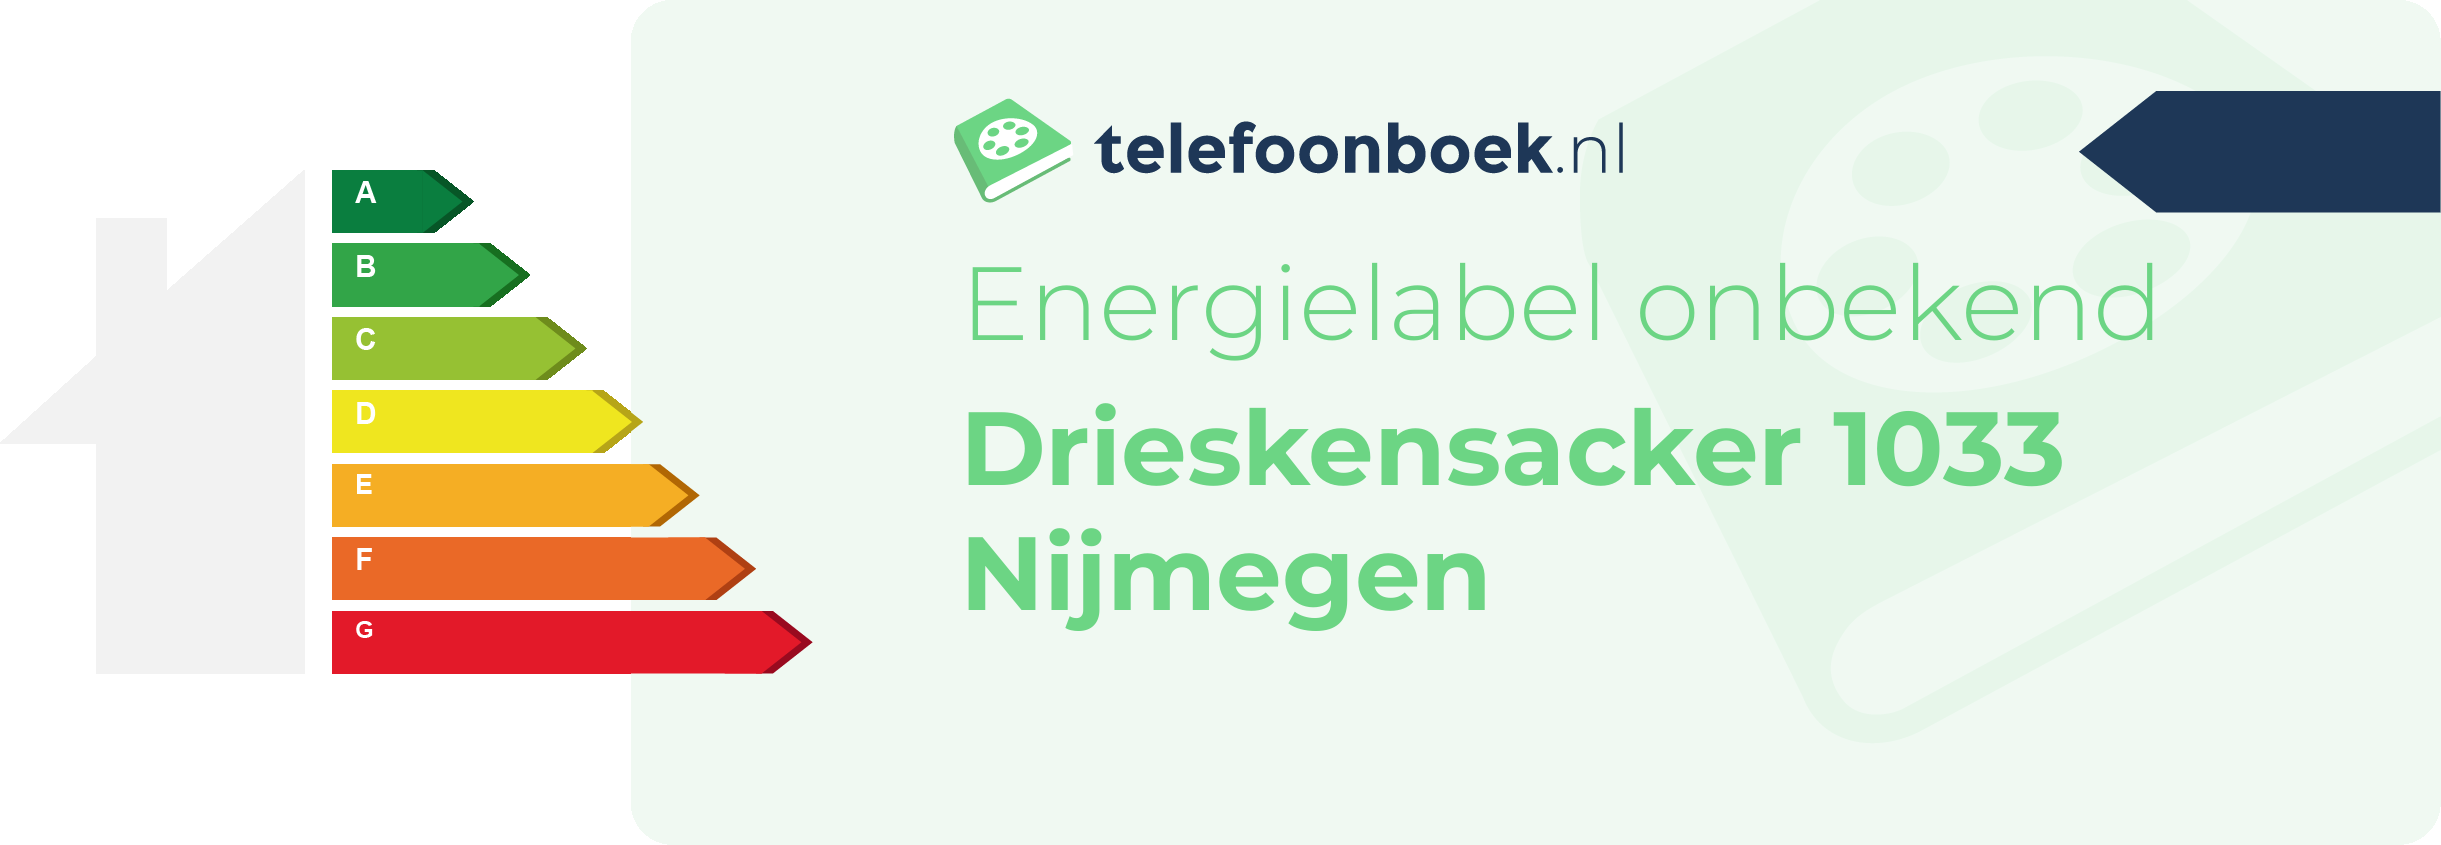 Energielabel Drieskensacker 1033 Nijmegen